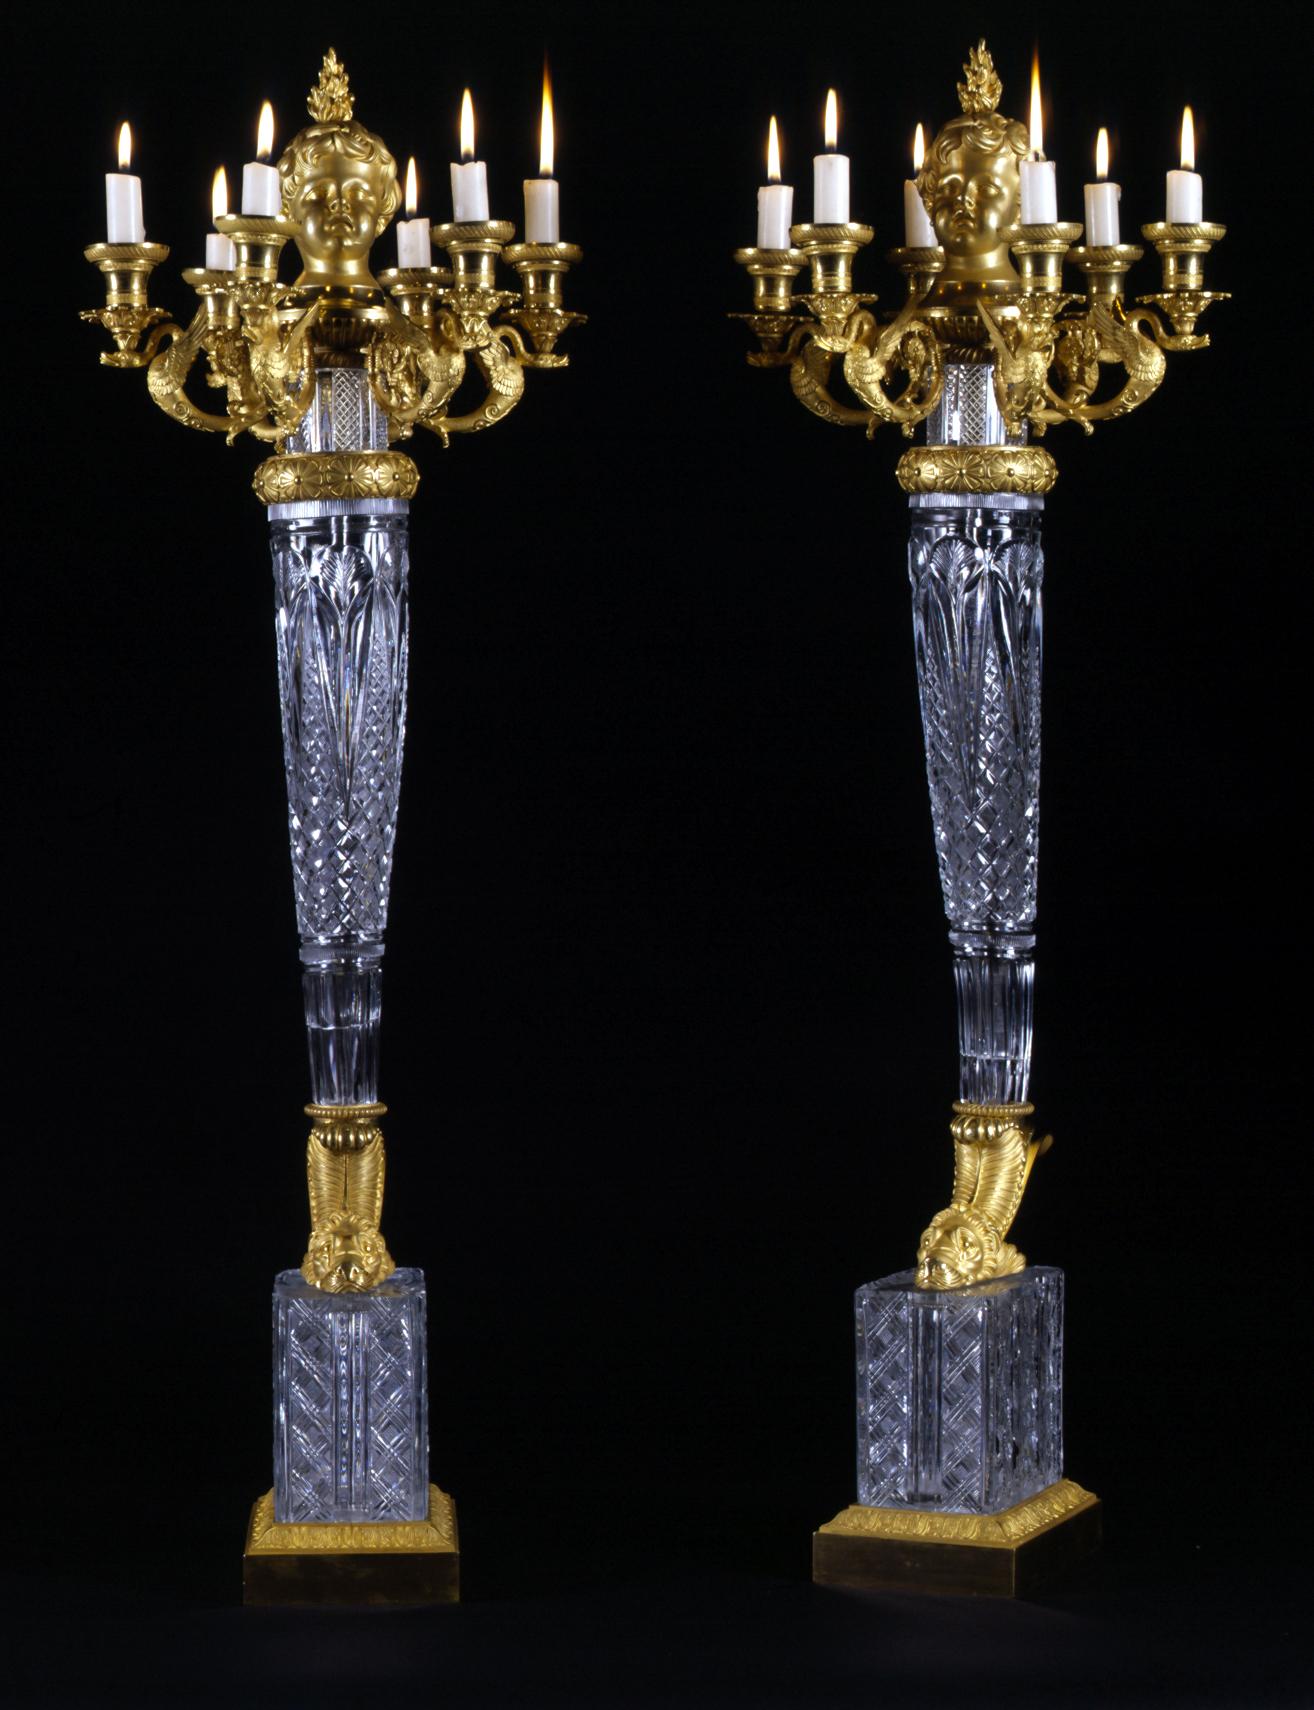 Une remarquable paire de candélabres de très haute importance de style Empire à six lumières en bronze doré et cristal taillé, attribuée à Escalier De Cristal De Paris.

Français, vers 1819.

Cette paire exceptionnelle de candélabres peut être